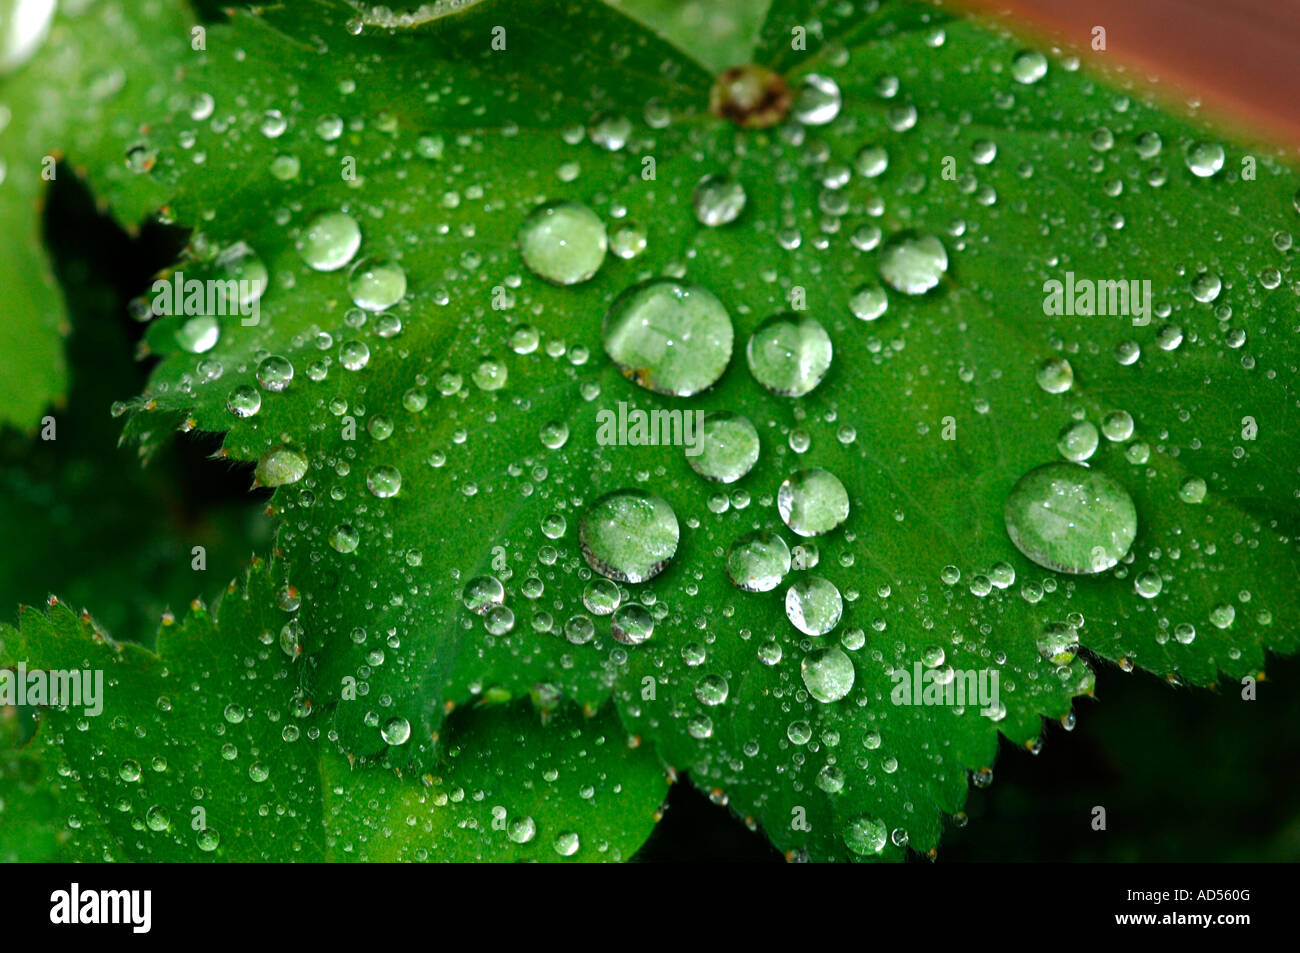 Hojas verdes cubiertas con Joya como gotas de lluvia Foto de stock